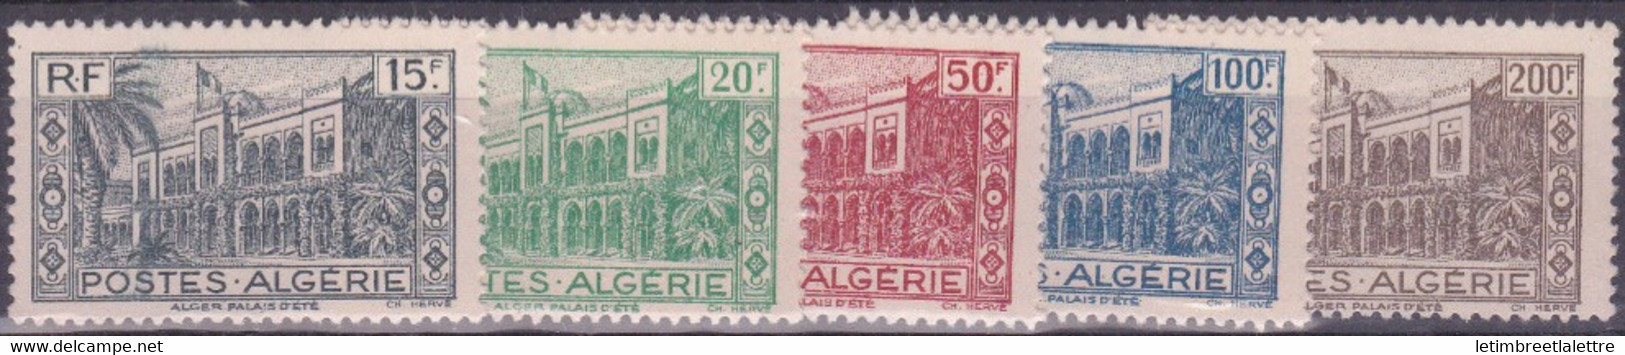 Algérie - YT N° 200 à 204 ** - Neuf Sans Charnière - 1944 - Ungebraucht